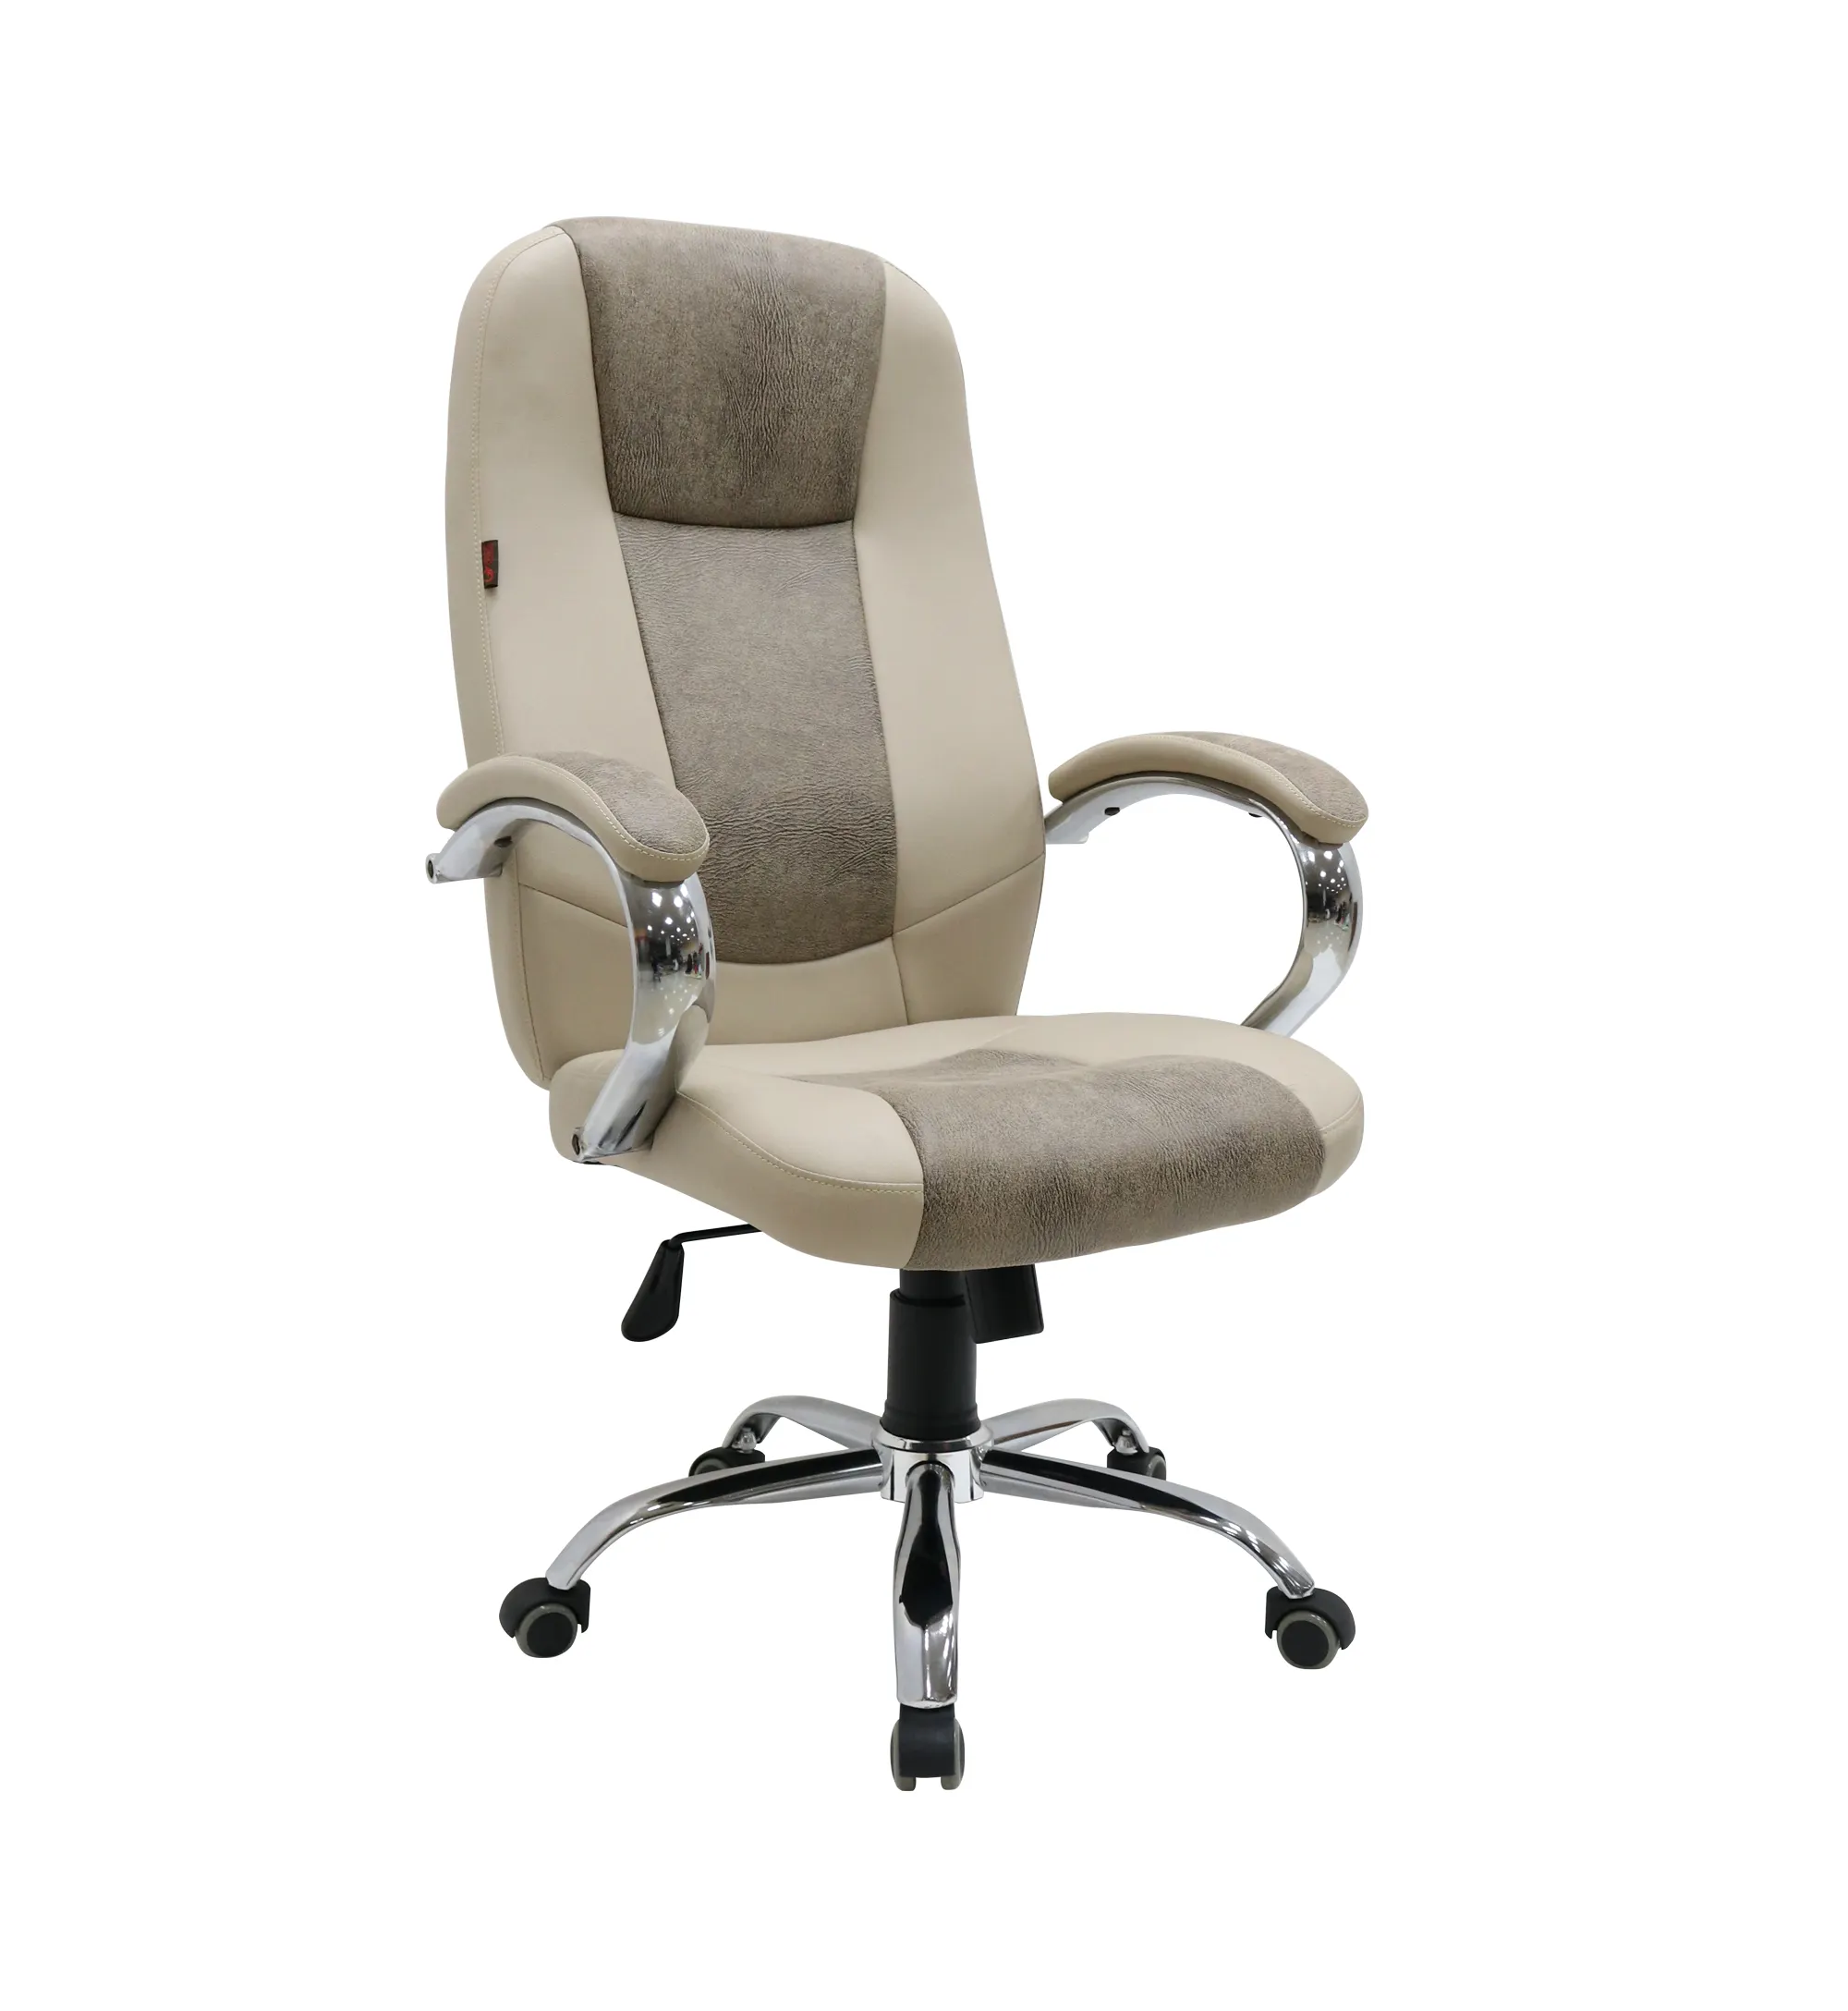 Vendita calda mobili per ufficio tessuto beige supporto per schienale a dondolo regolabile sedie esecutive moderne